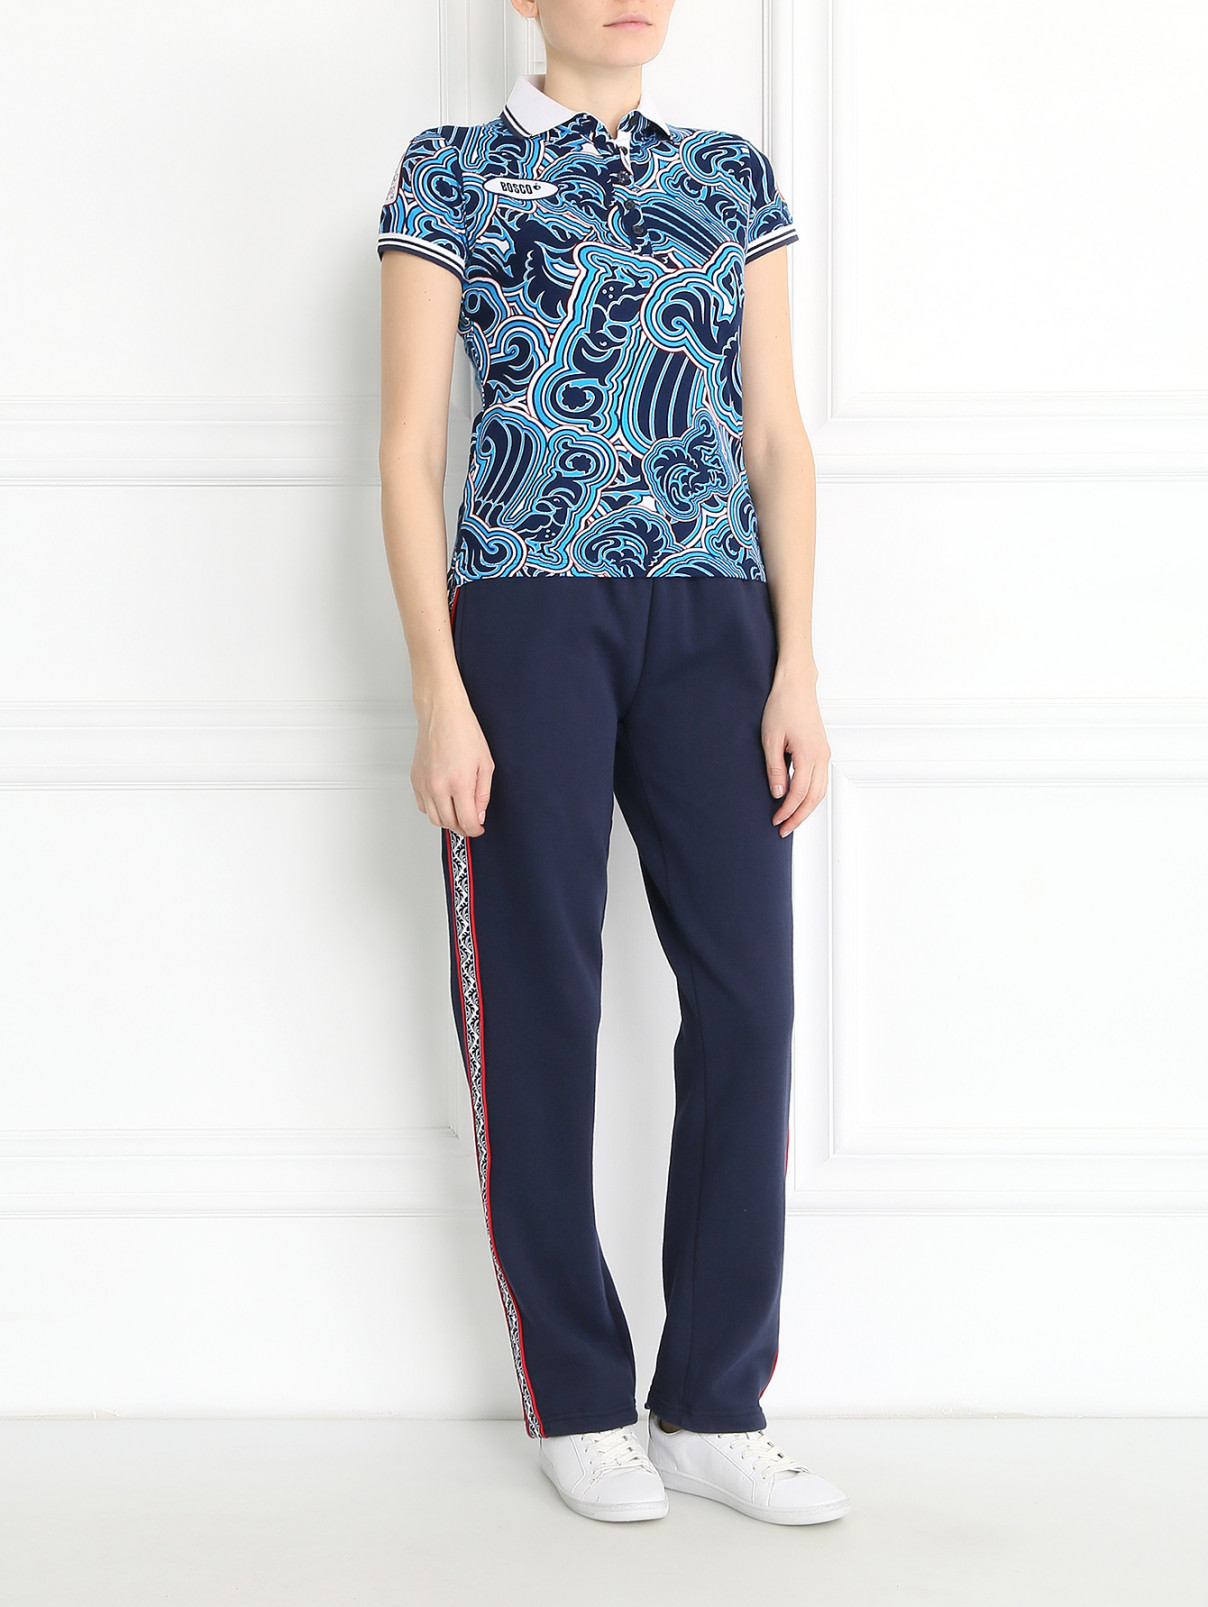 Спортивные брюки из хлопка BOSCO  –  Модель Общий вид  – Цвет:  Синий